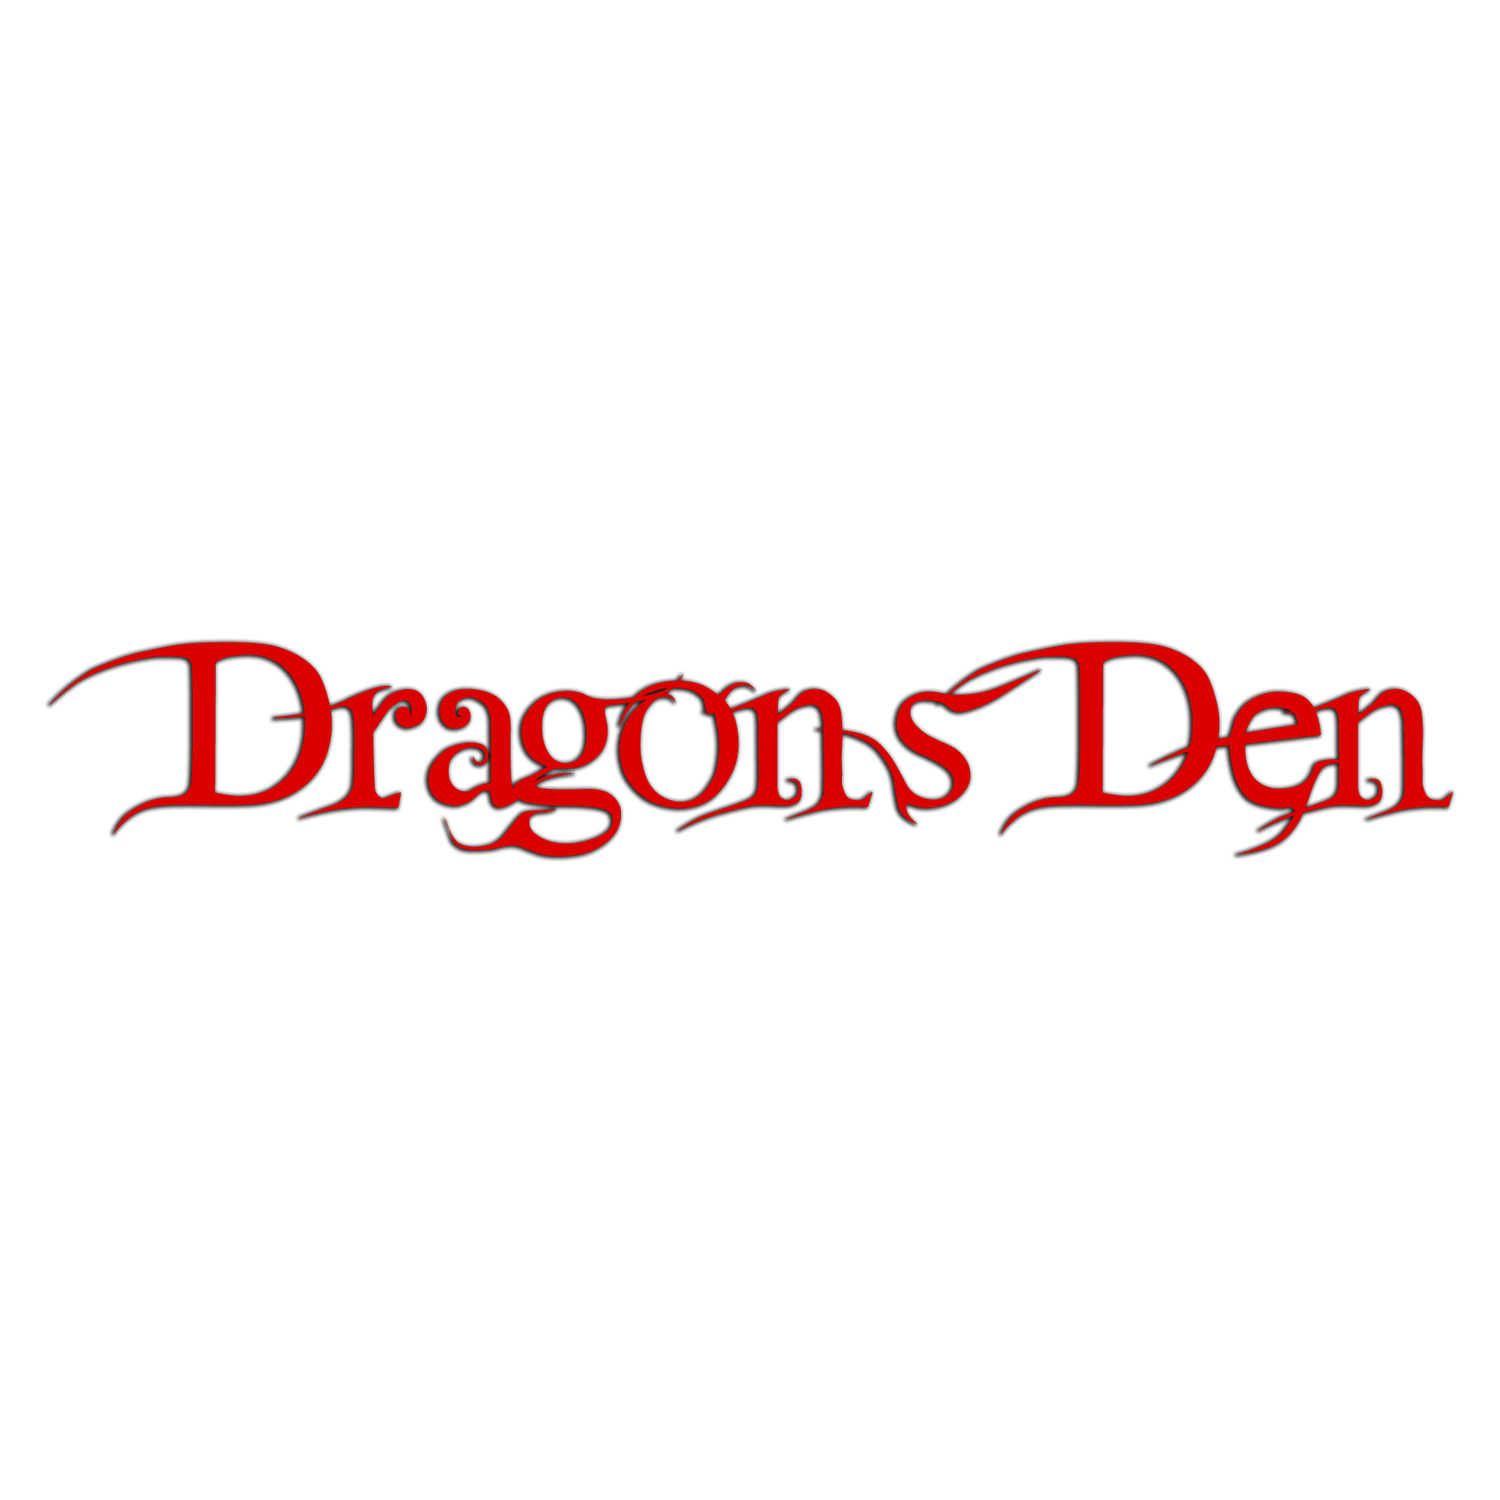 Dragon’s Den